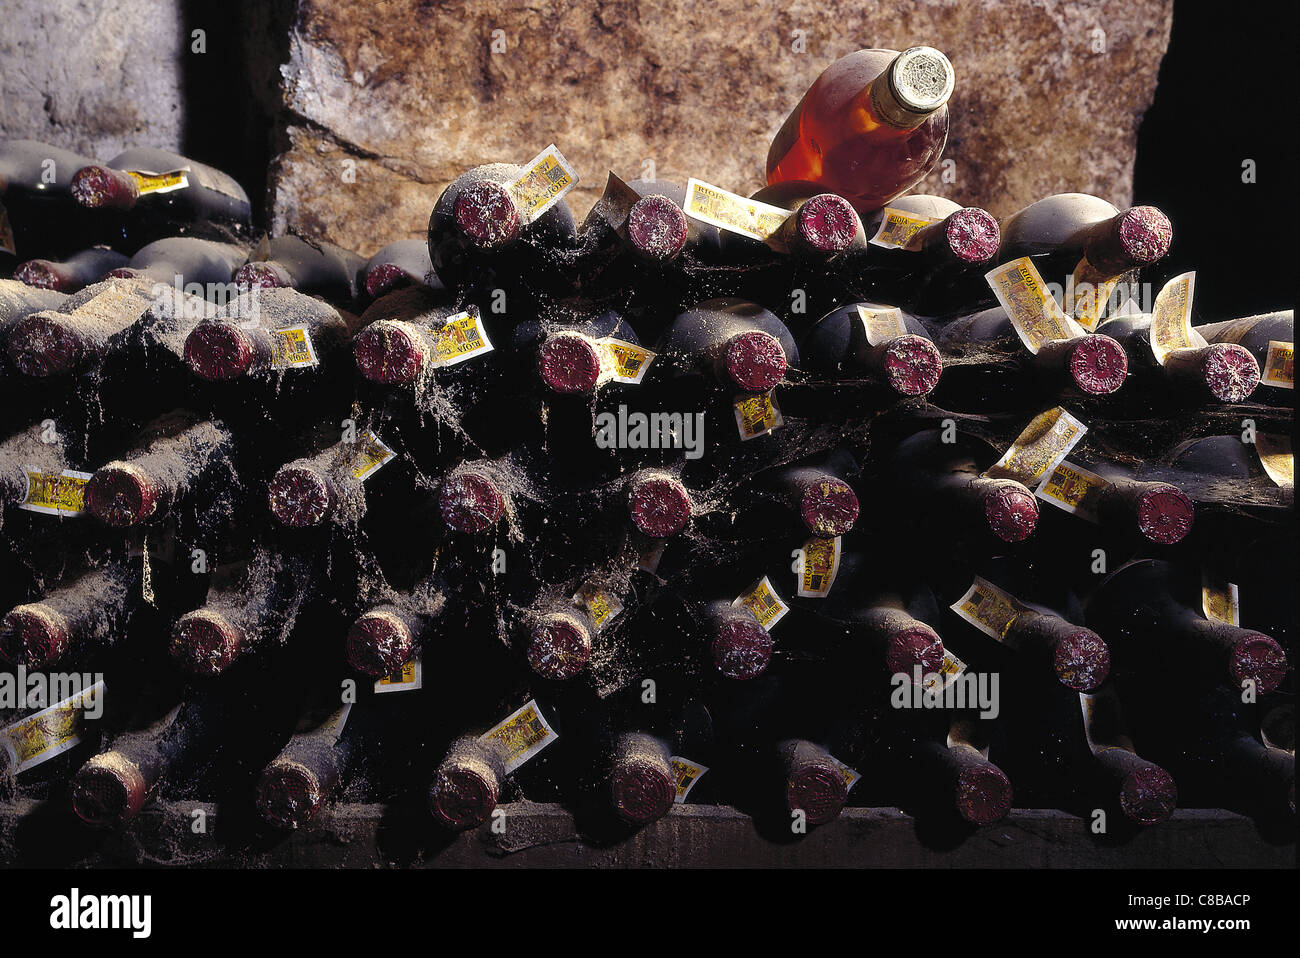 galician albarino wine and basque txakoli wine in cellar Stock Photo